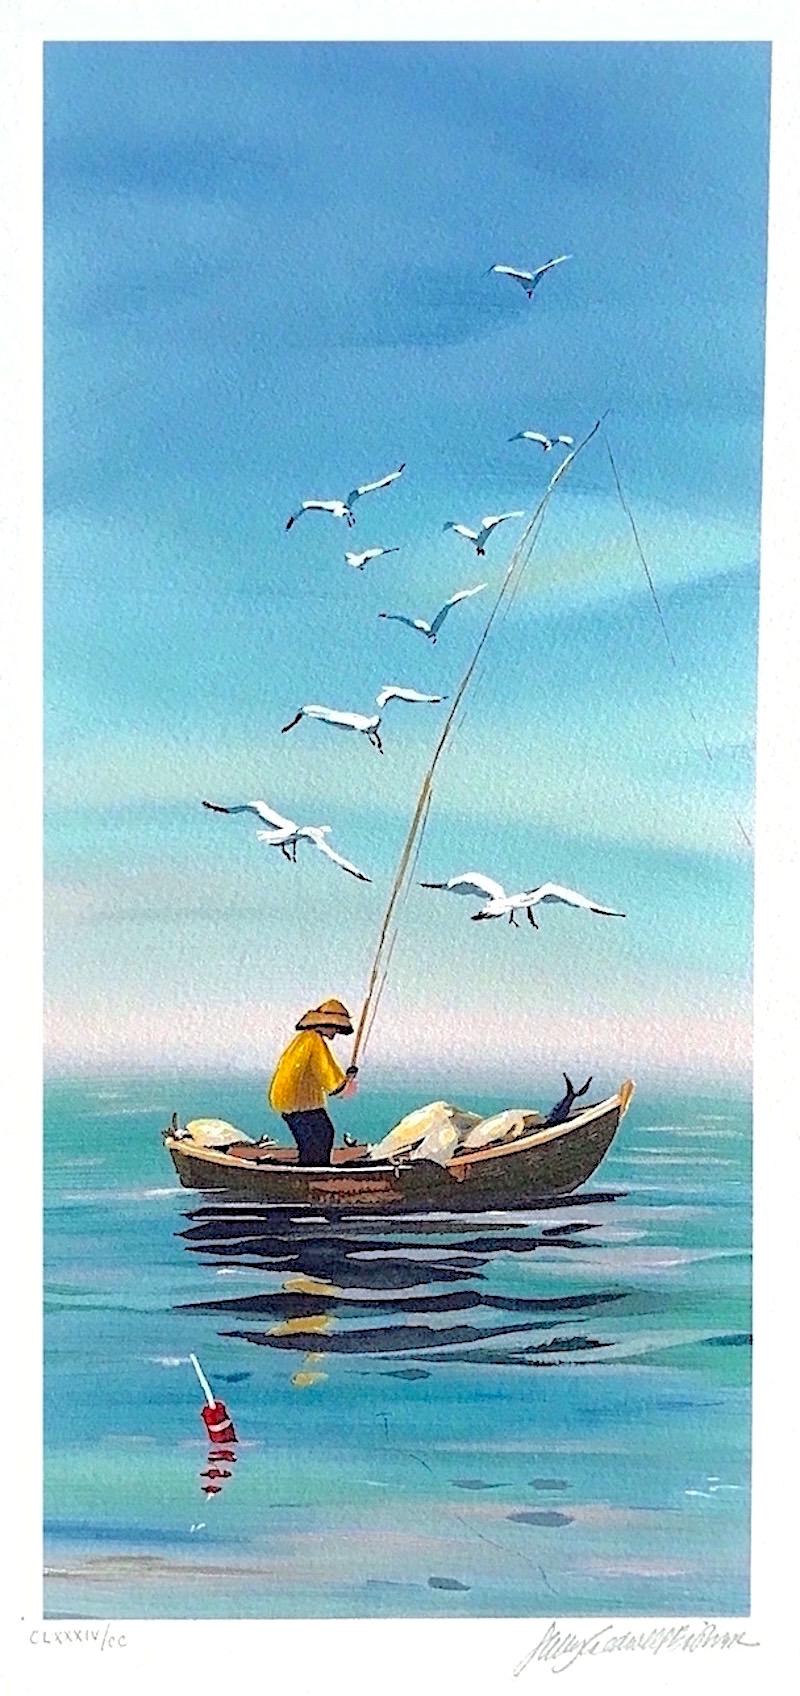 Lithographie signée EARLY CATCH, pêcheur de Nouvelle-Angleterre, gravure de petits bateaux, mouettes - Print de Sally Caldwell-Fisher